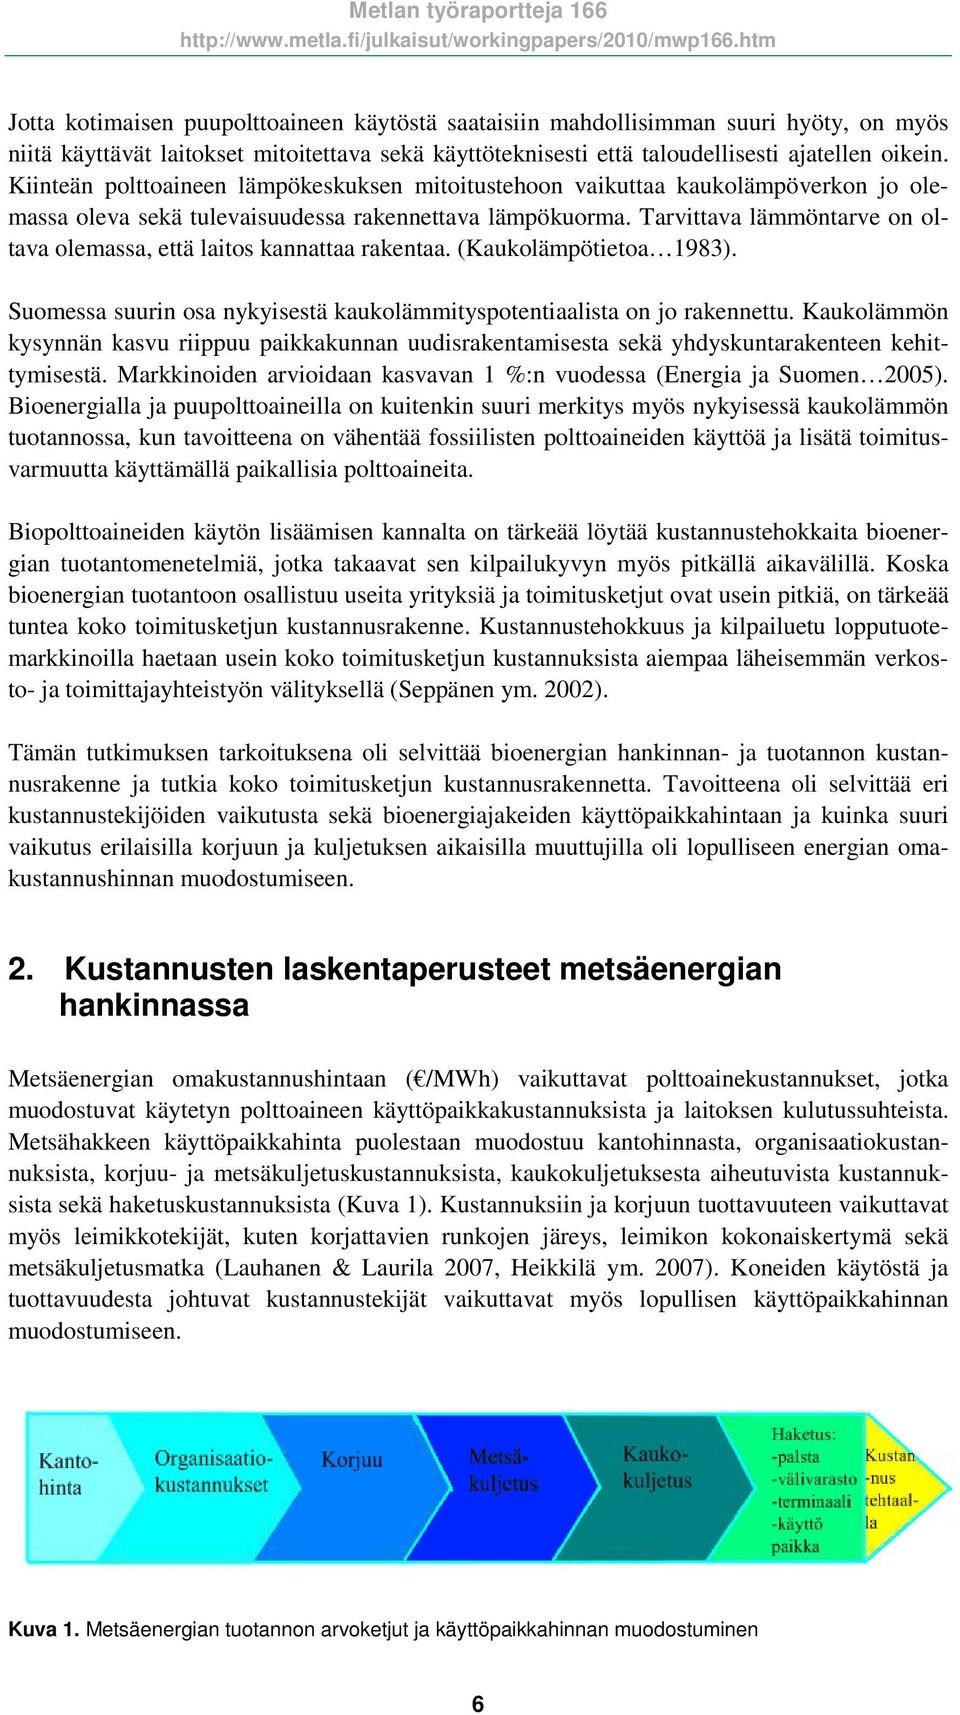 Tarvittava lämmöntarve on oltava olemassa, että laitos kannattaa rakentaa. (Kaukolämpötietoa 1983). Suomessa suurin osa nykyisestä kaukolämmityspotentiaalista on jo rakennettu.